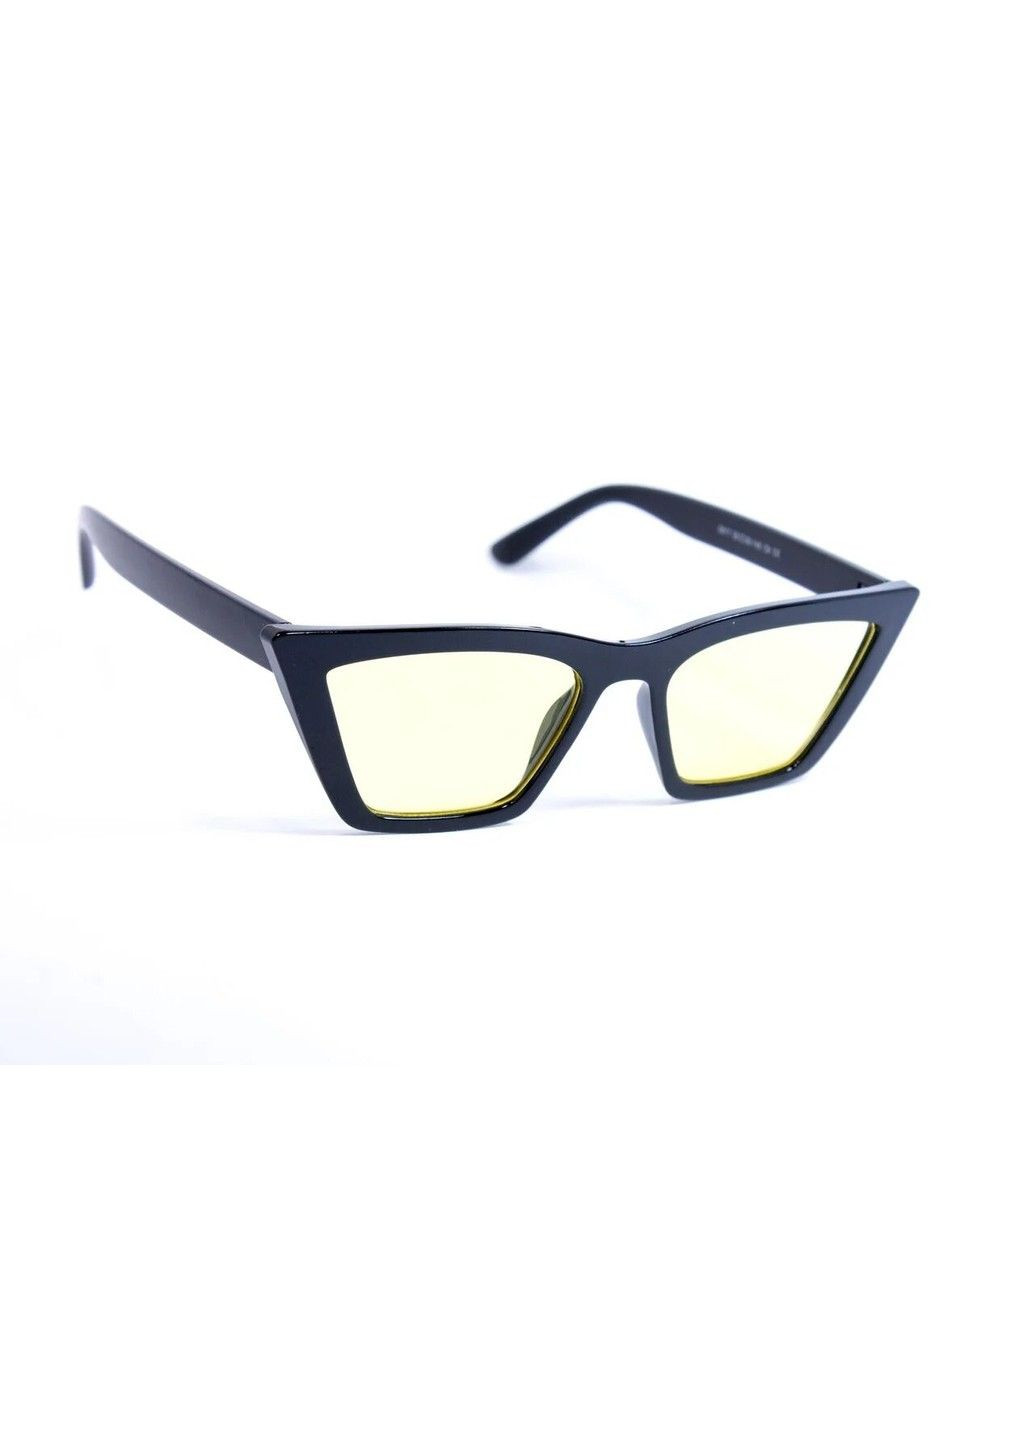 Cолнцезащитные женские очки 0017-6 BR-S (291984079)